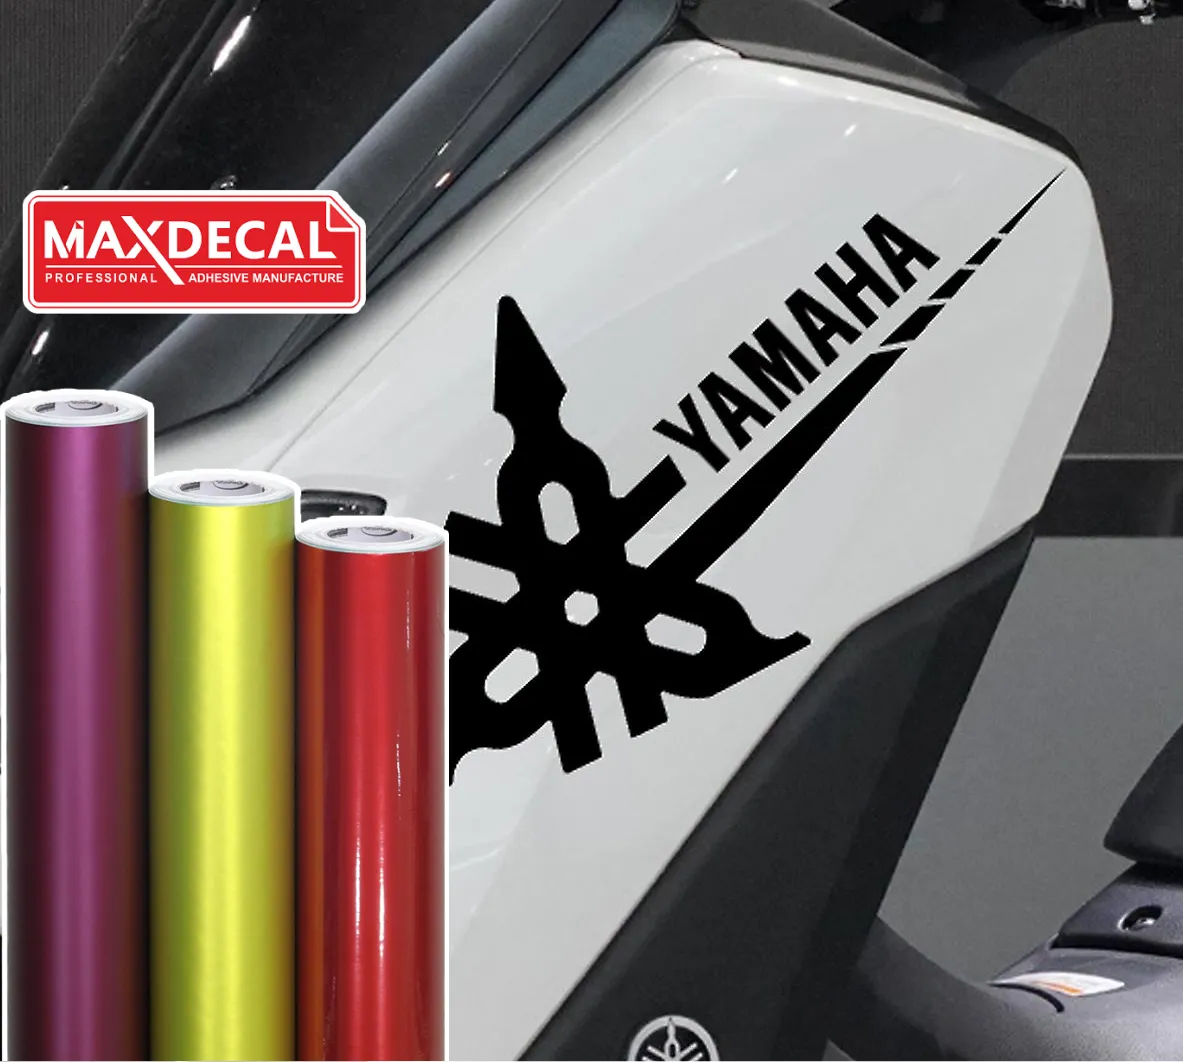 Decal Merek Yamaha Terpasang Pada Motor Dengan Roll Vinyl Max Decal Warna-Warni Di Sampingnya.